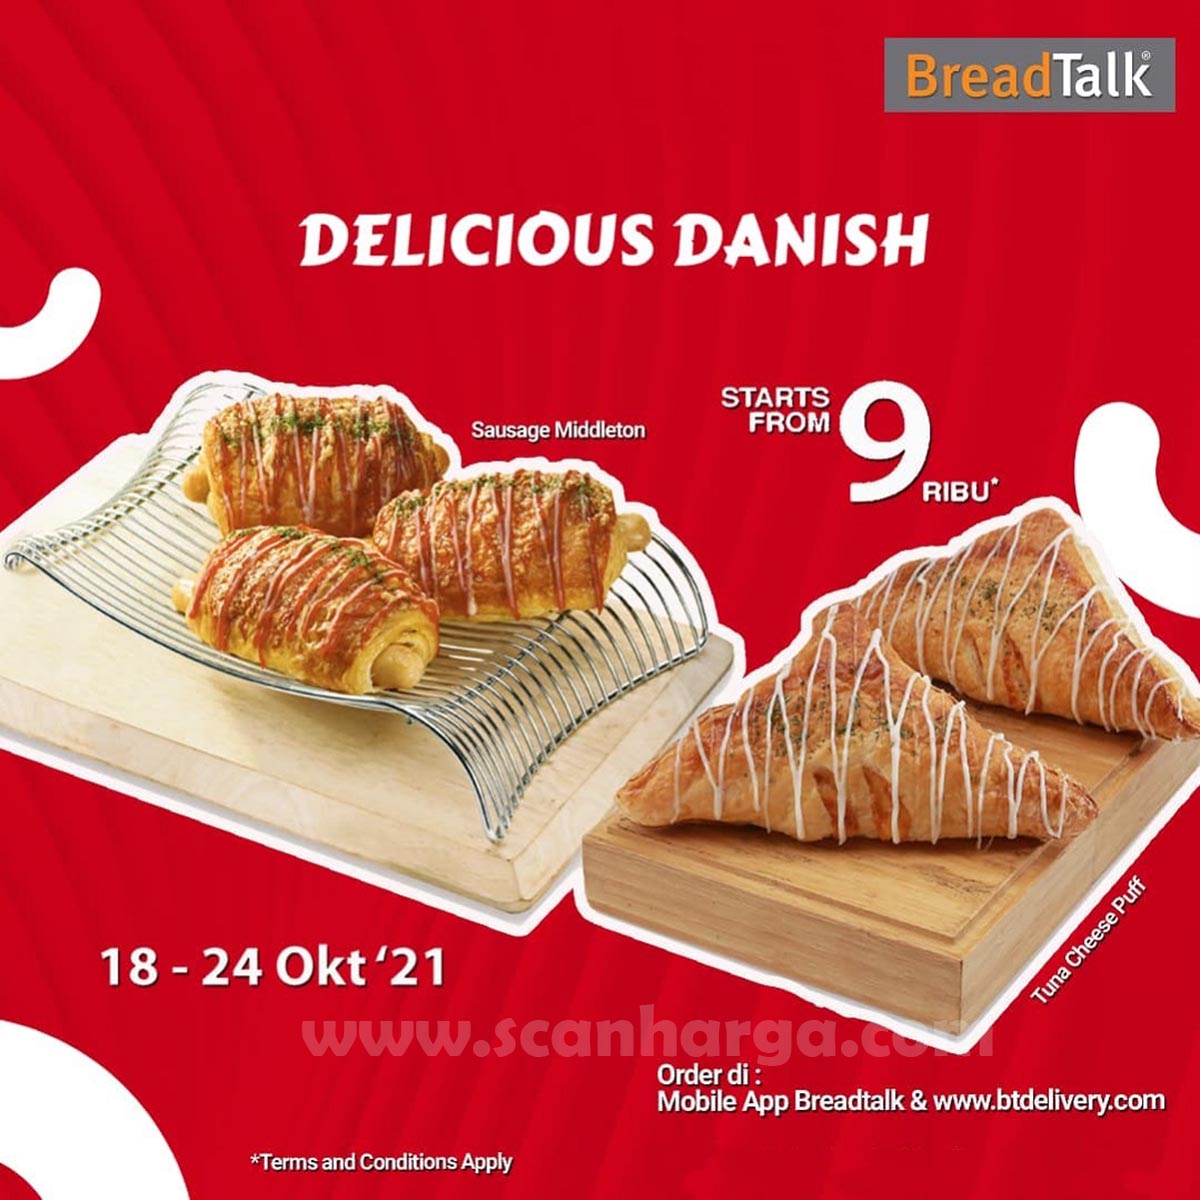 Promo Breadtalk Delicious Danish mulai dari Rp. 9.000